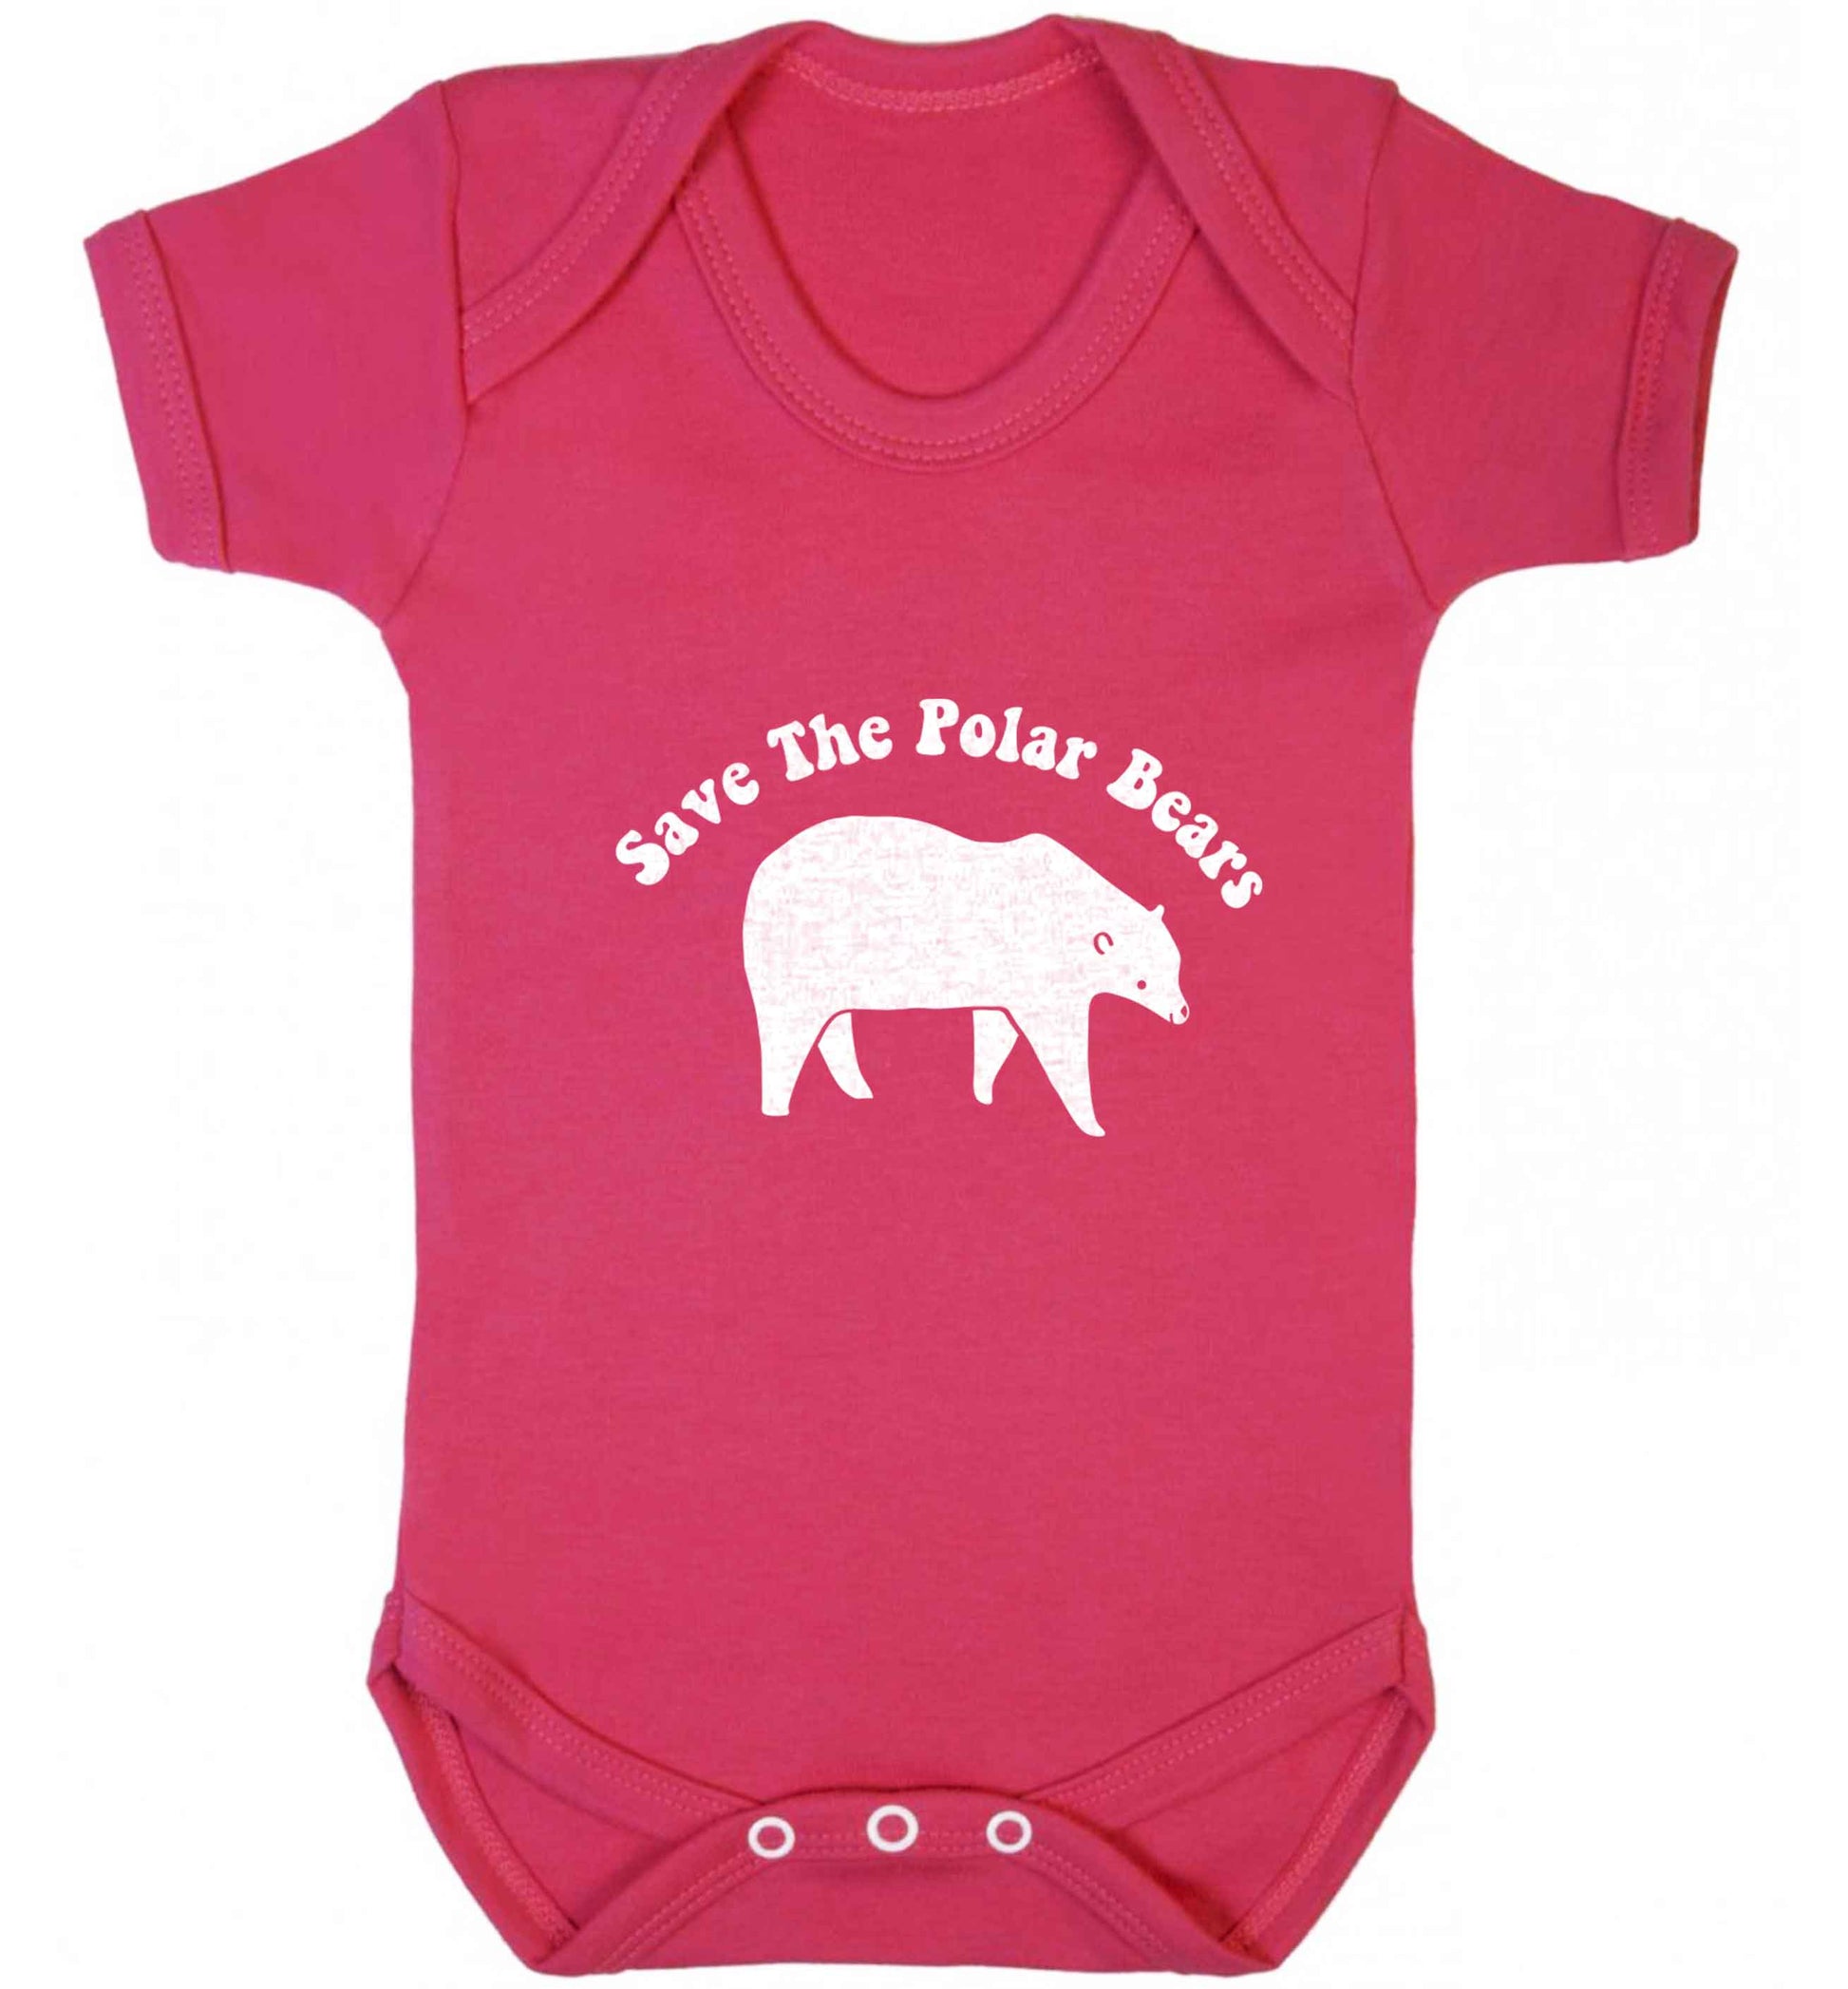 Save The Polar Bears baby vest dark pink 18-24 months